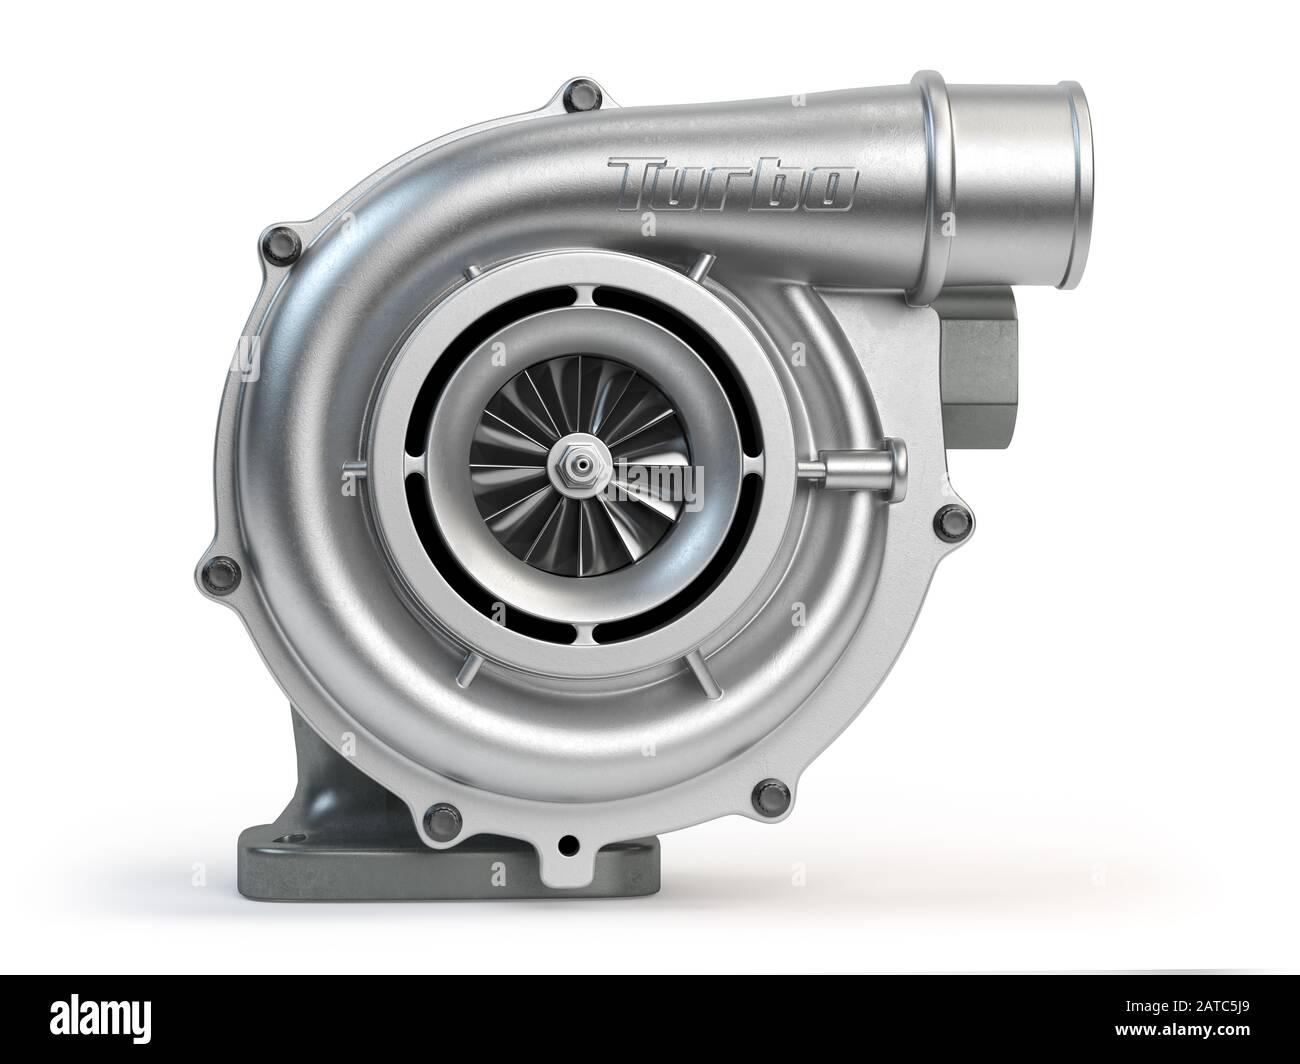 Turbocompresseur isolé sur fond blanc. Moteur turbo. illustration tridimensionnelle Banque D'Images